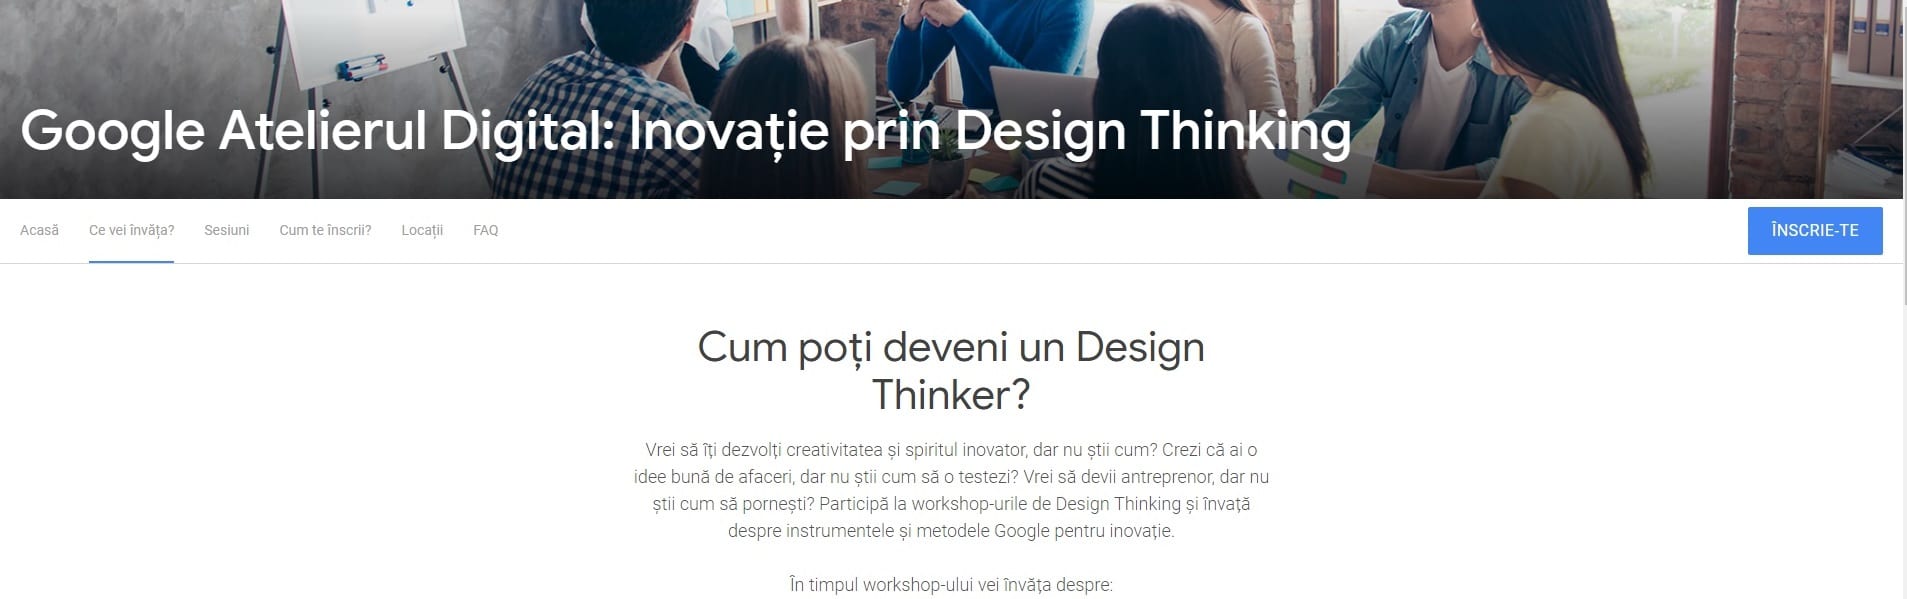 Google lansează cursuri gratuite de Design Thinking